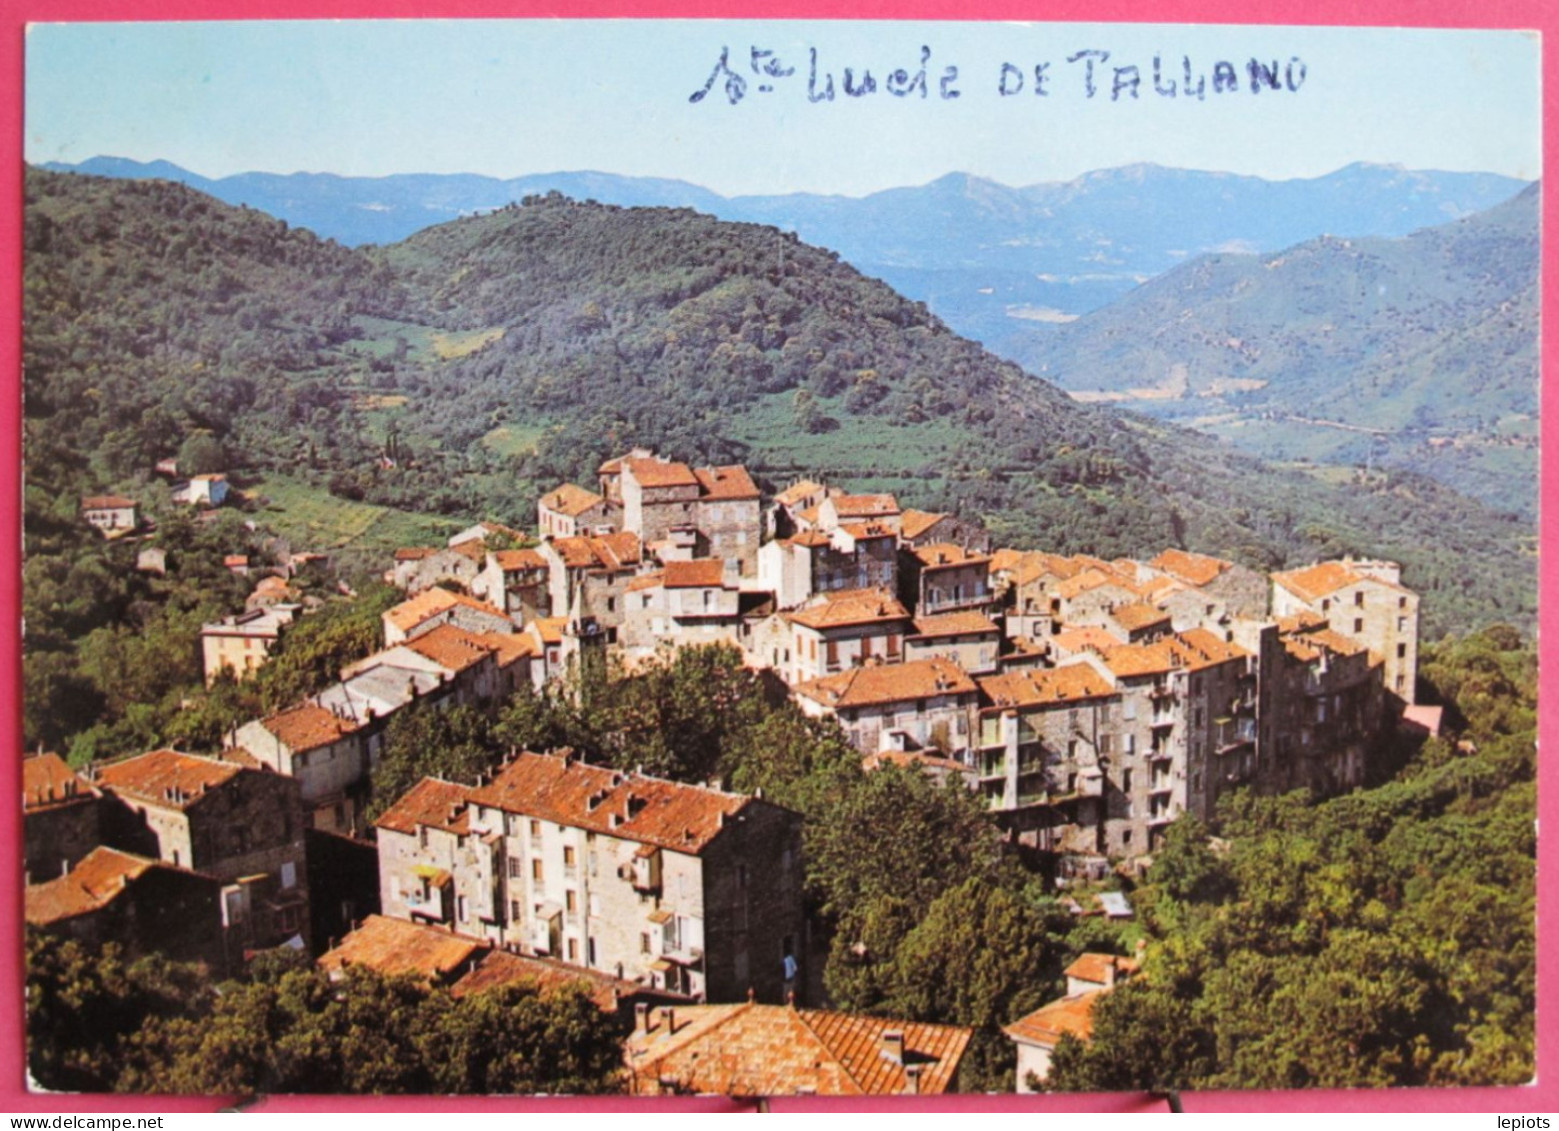 Visuel Pas Très Courant - 20 - Corse - Sainte Lucie De Tallano - Divers Aspects Du Village - Sartene